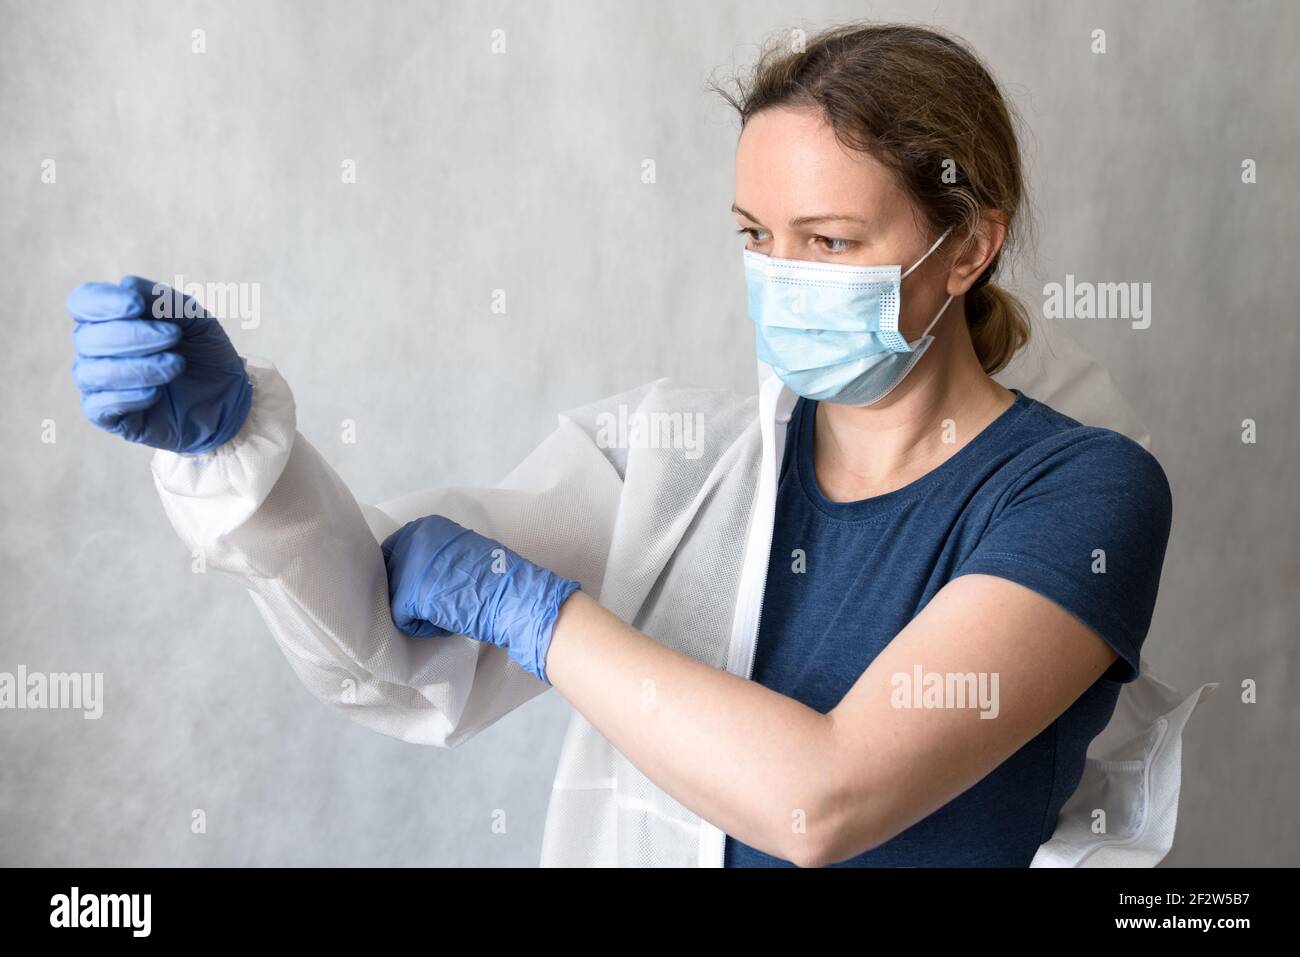 El médico pone equipo de protección personal (PPE) debido a COVID-19, enfermera femenina con cobertura médica para coronavirus, la mujer médico tiene uniforme Foto de stock